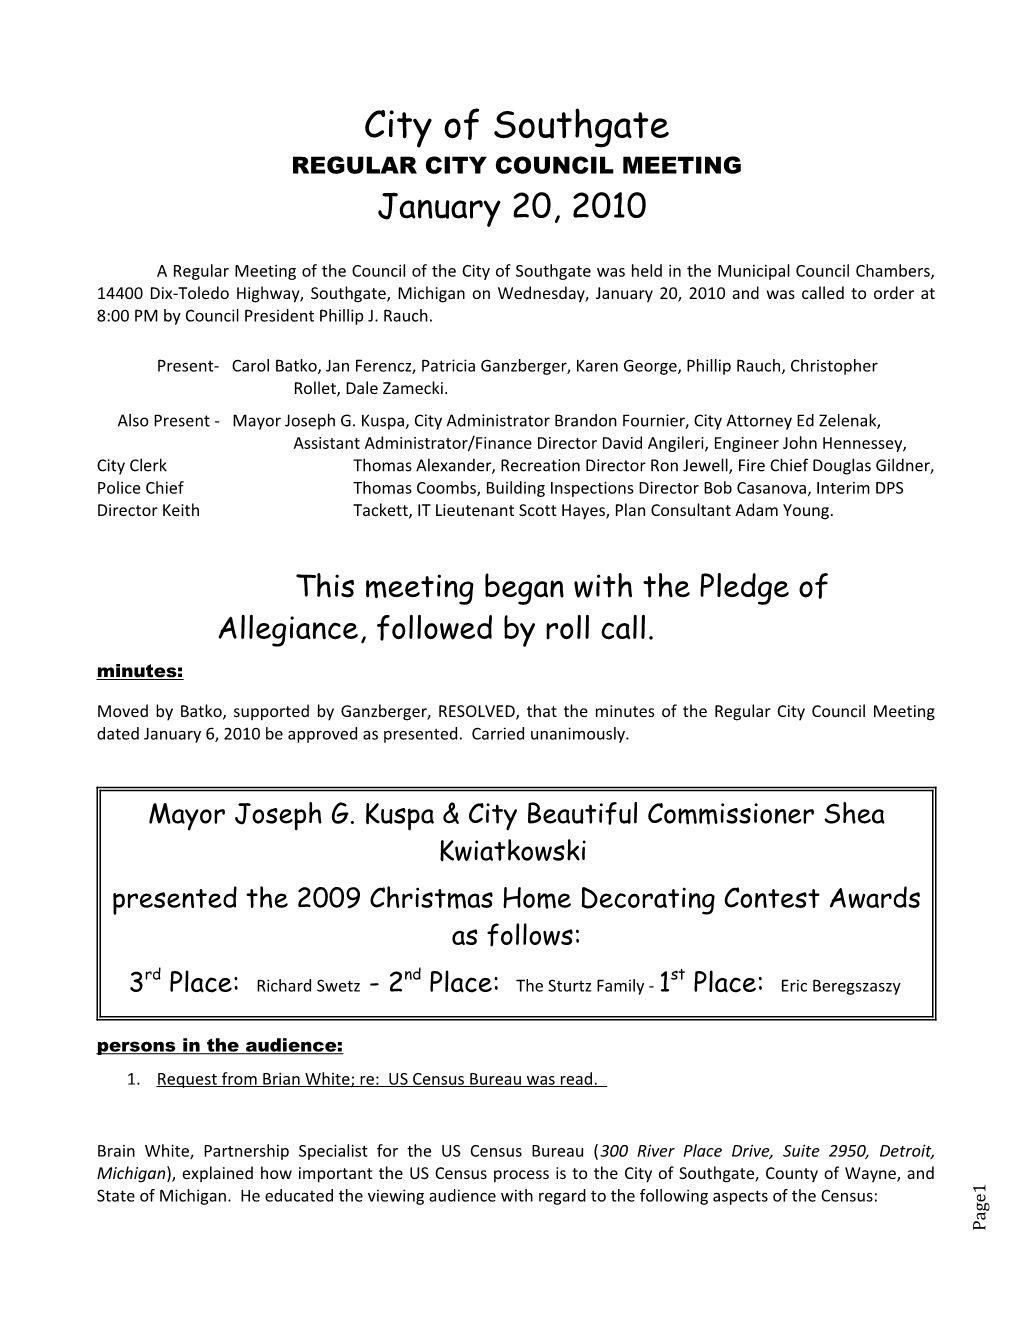 Regular City Council Meeting s9